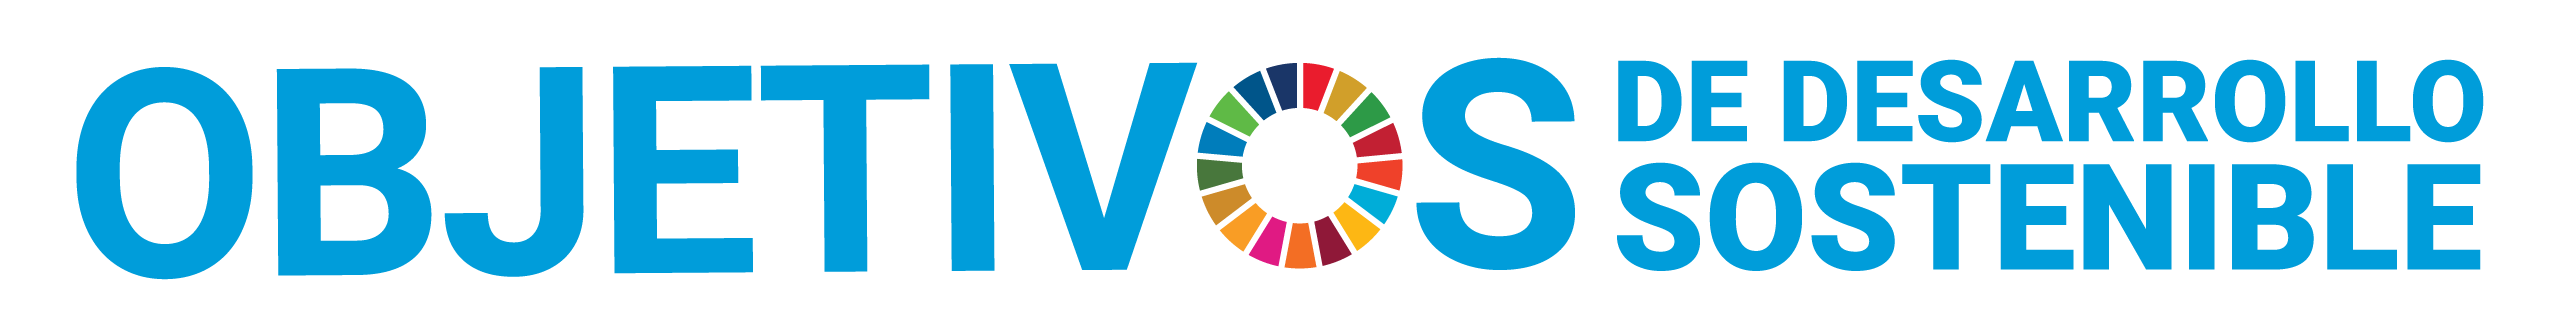 ODS - Objetivos de desarrollo sotenible